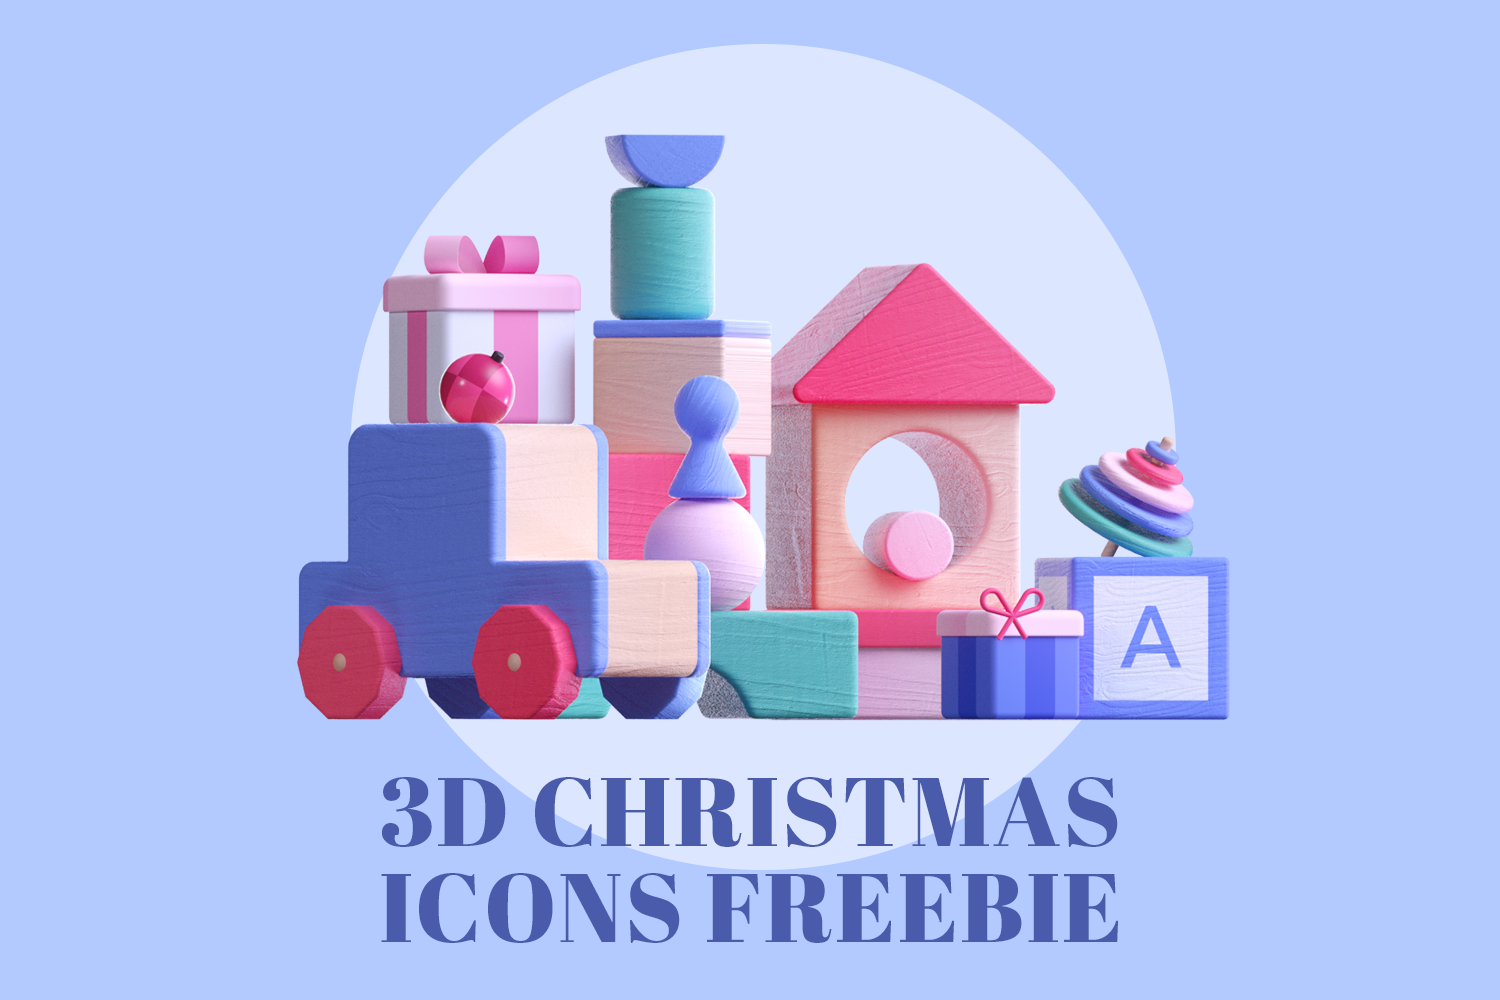 1421 可商用冬季雪景3D卡通圣诞可爱雪人积木C4D模型3D Christmas icons freebie